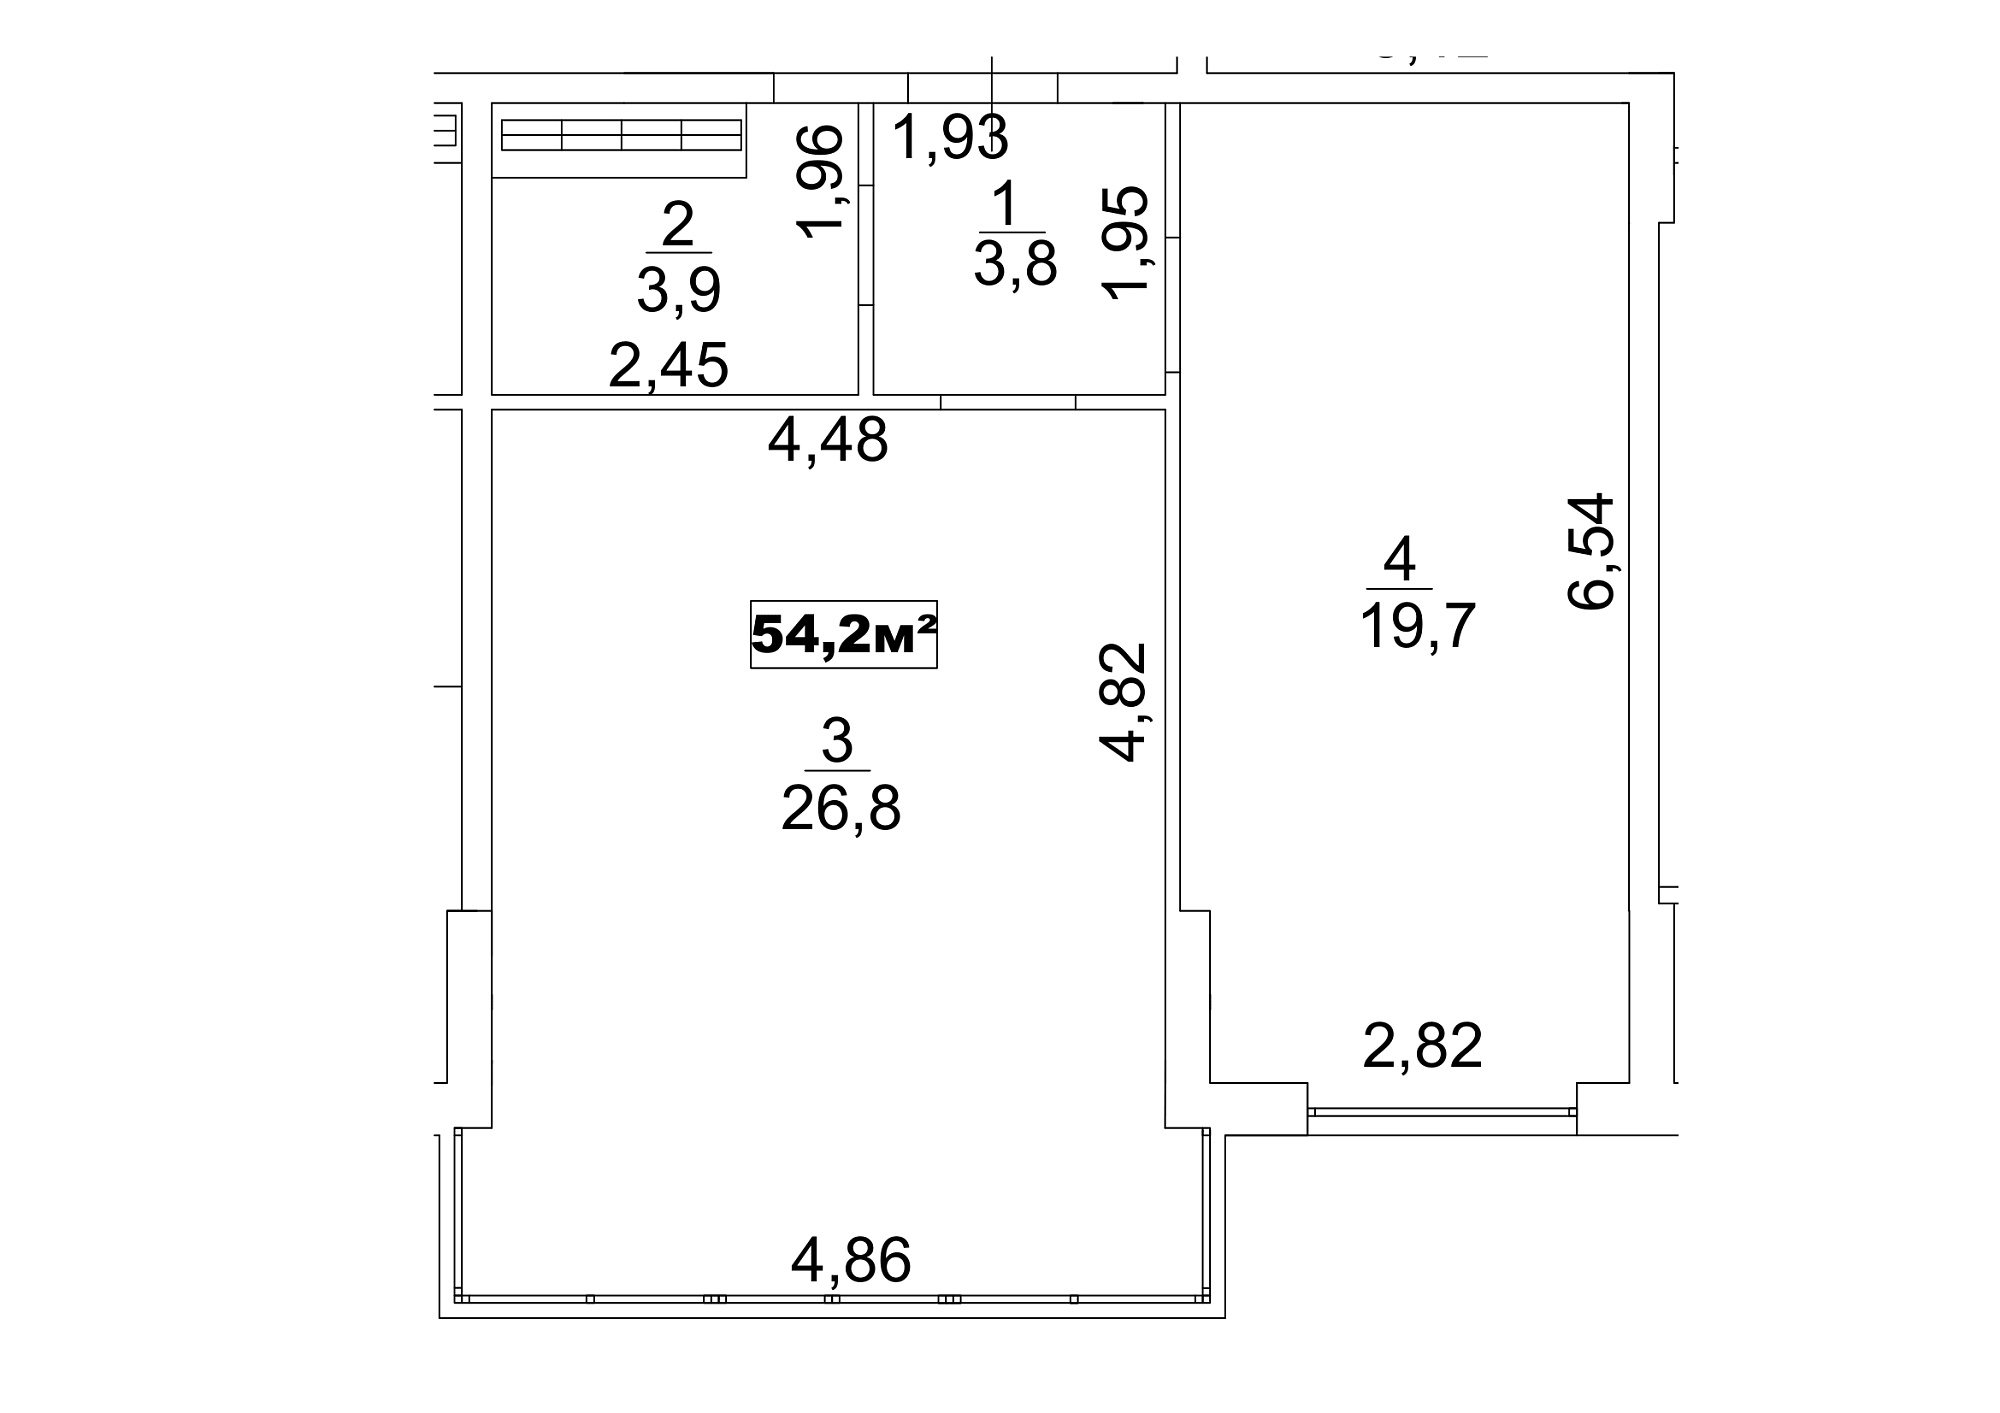 Планировка 1-к квартира площей 54.2м2, AB-13-09/00077.